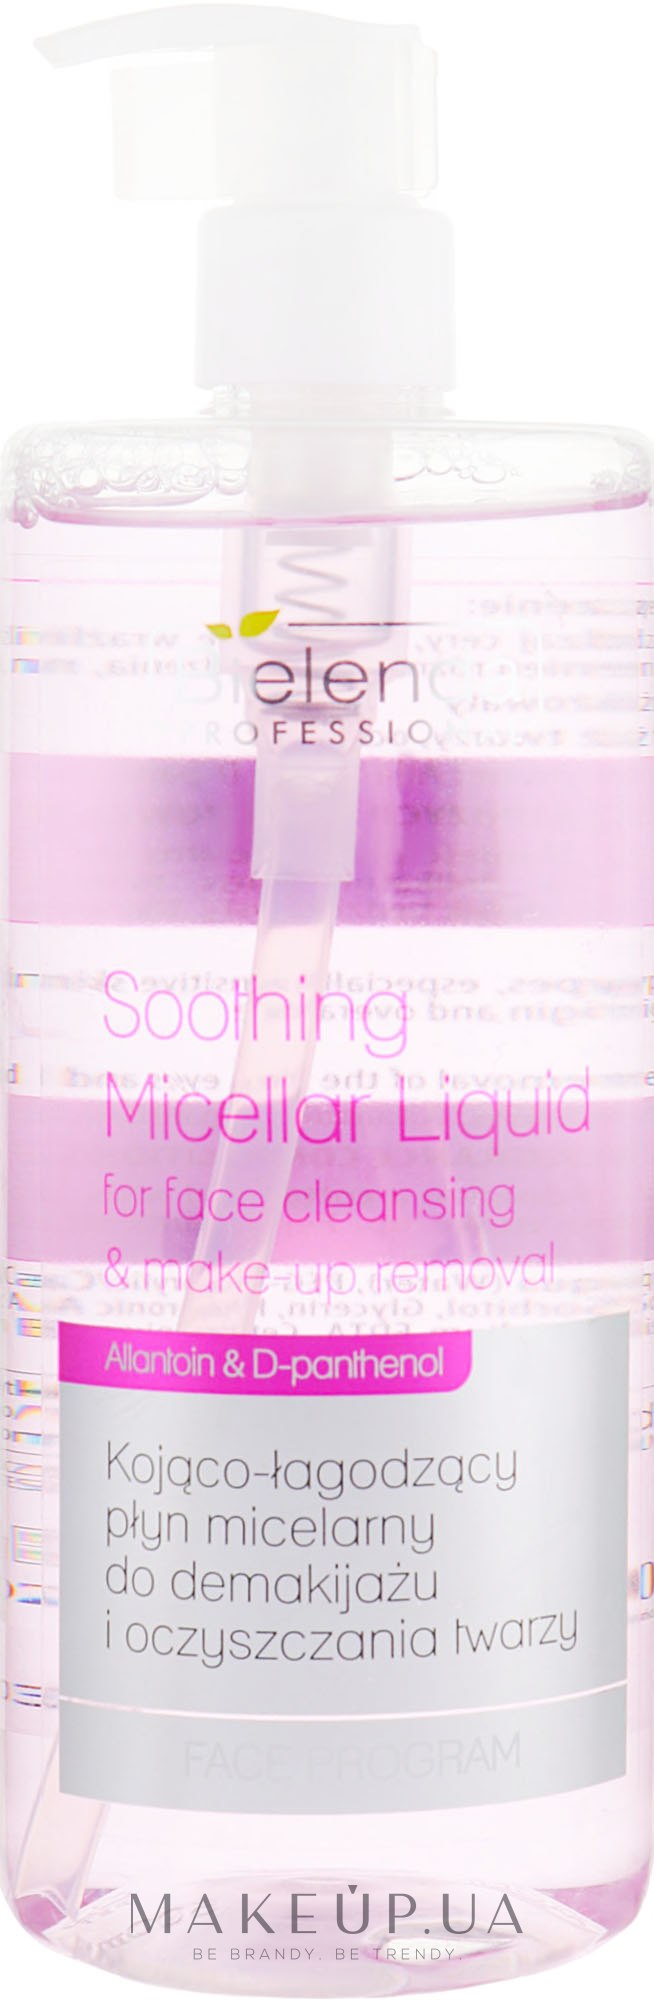 Успокаивающая мицеллярная жидкость для снятия макияжа - Bielenda Professional Program Face Soothing Micellar Liquid — фото 500ml